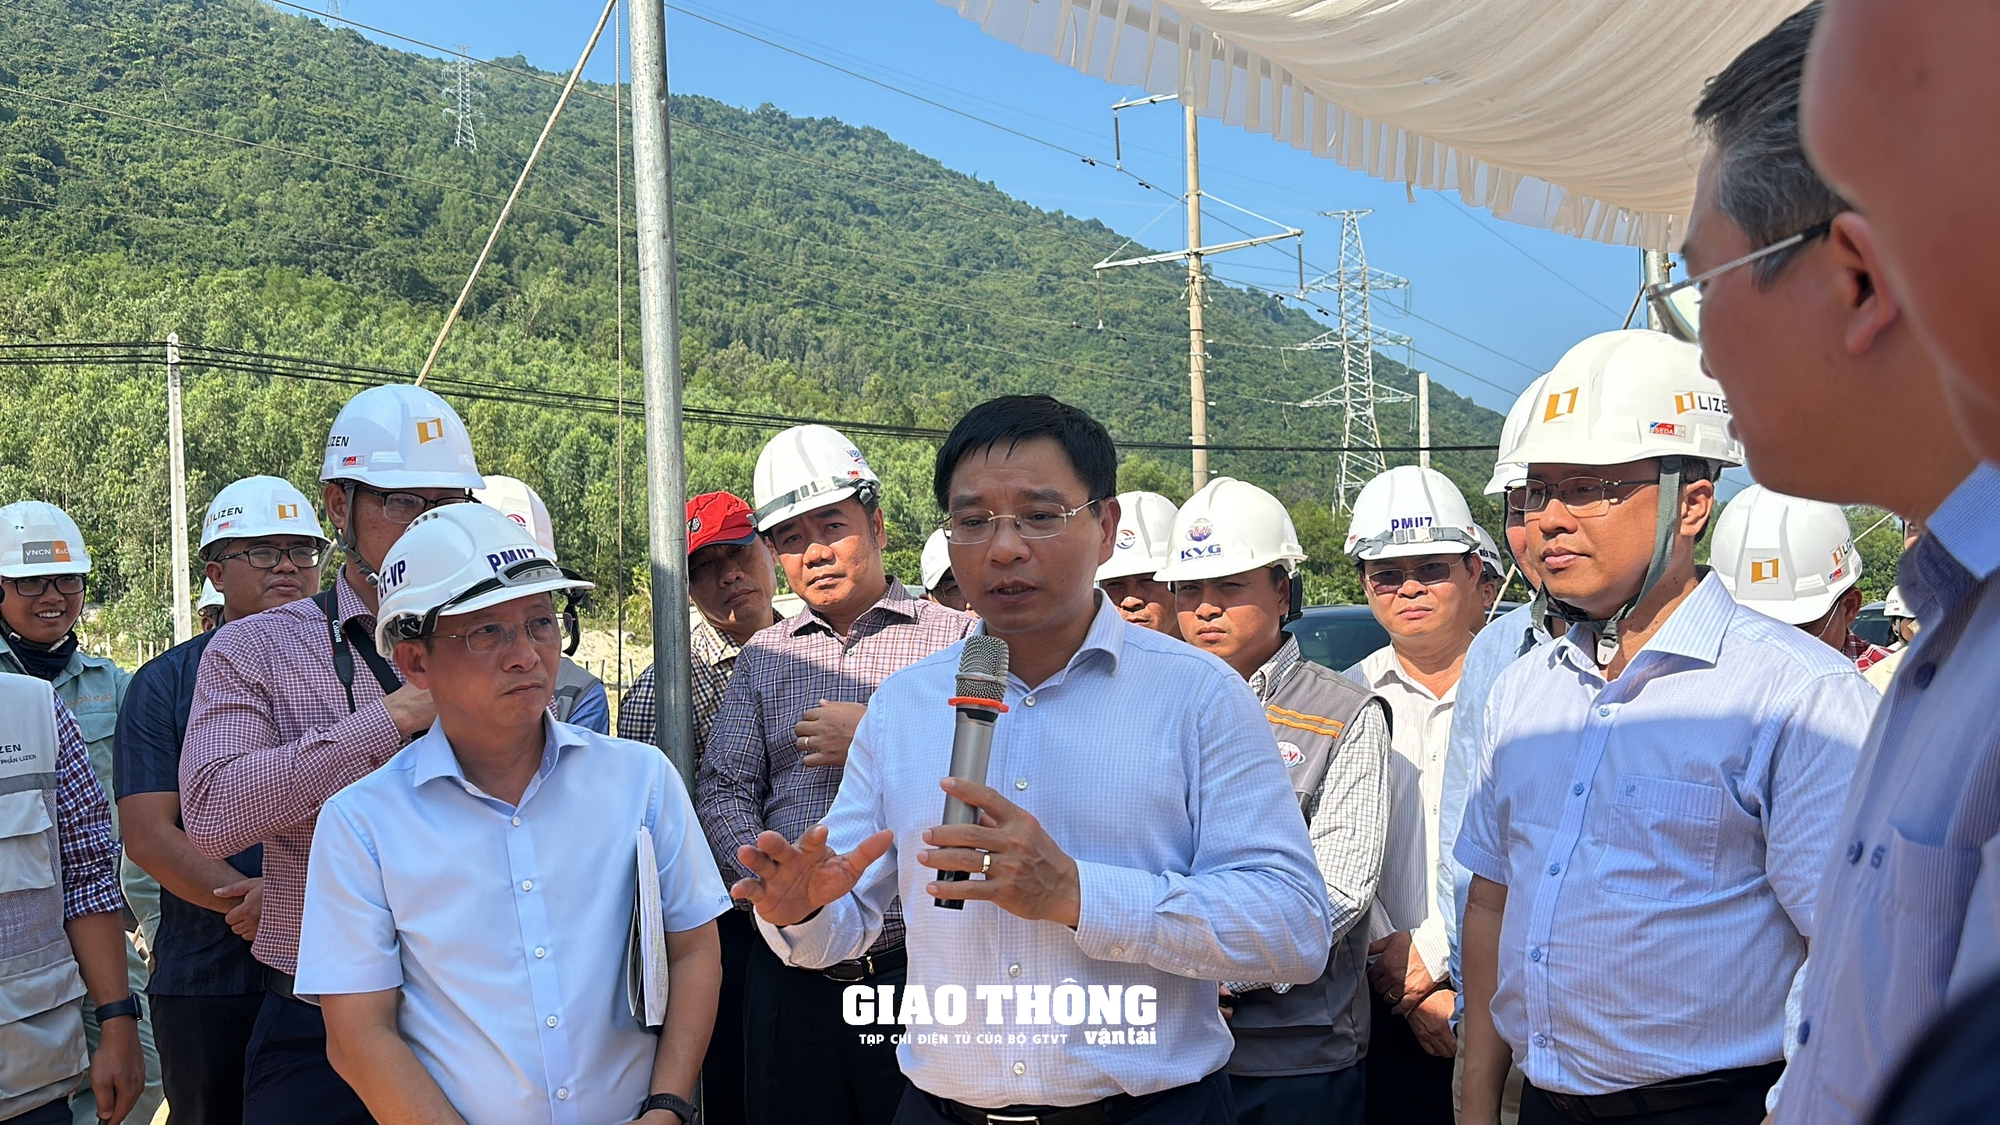 Bộ trưởng Nguyễn Văn Thắng thị sát cao tốc Bắc - Nam qua Bình Định, Phú Yên, Khánh Hòa- Ảnh 1.